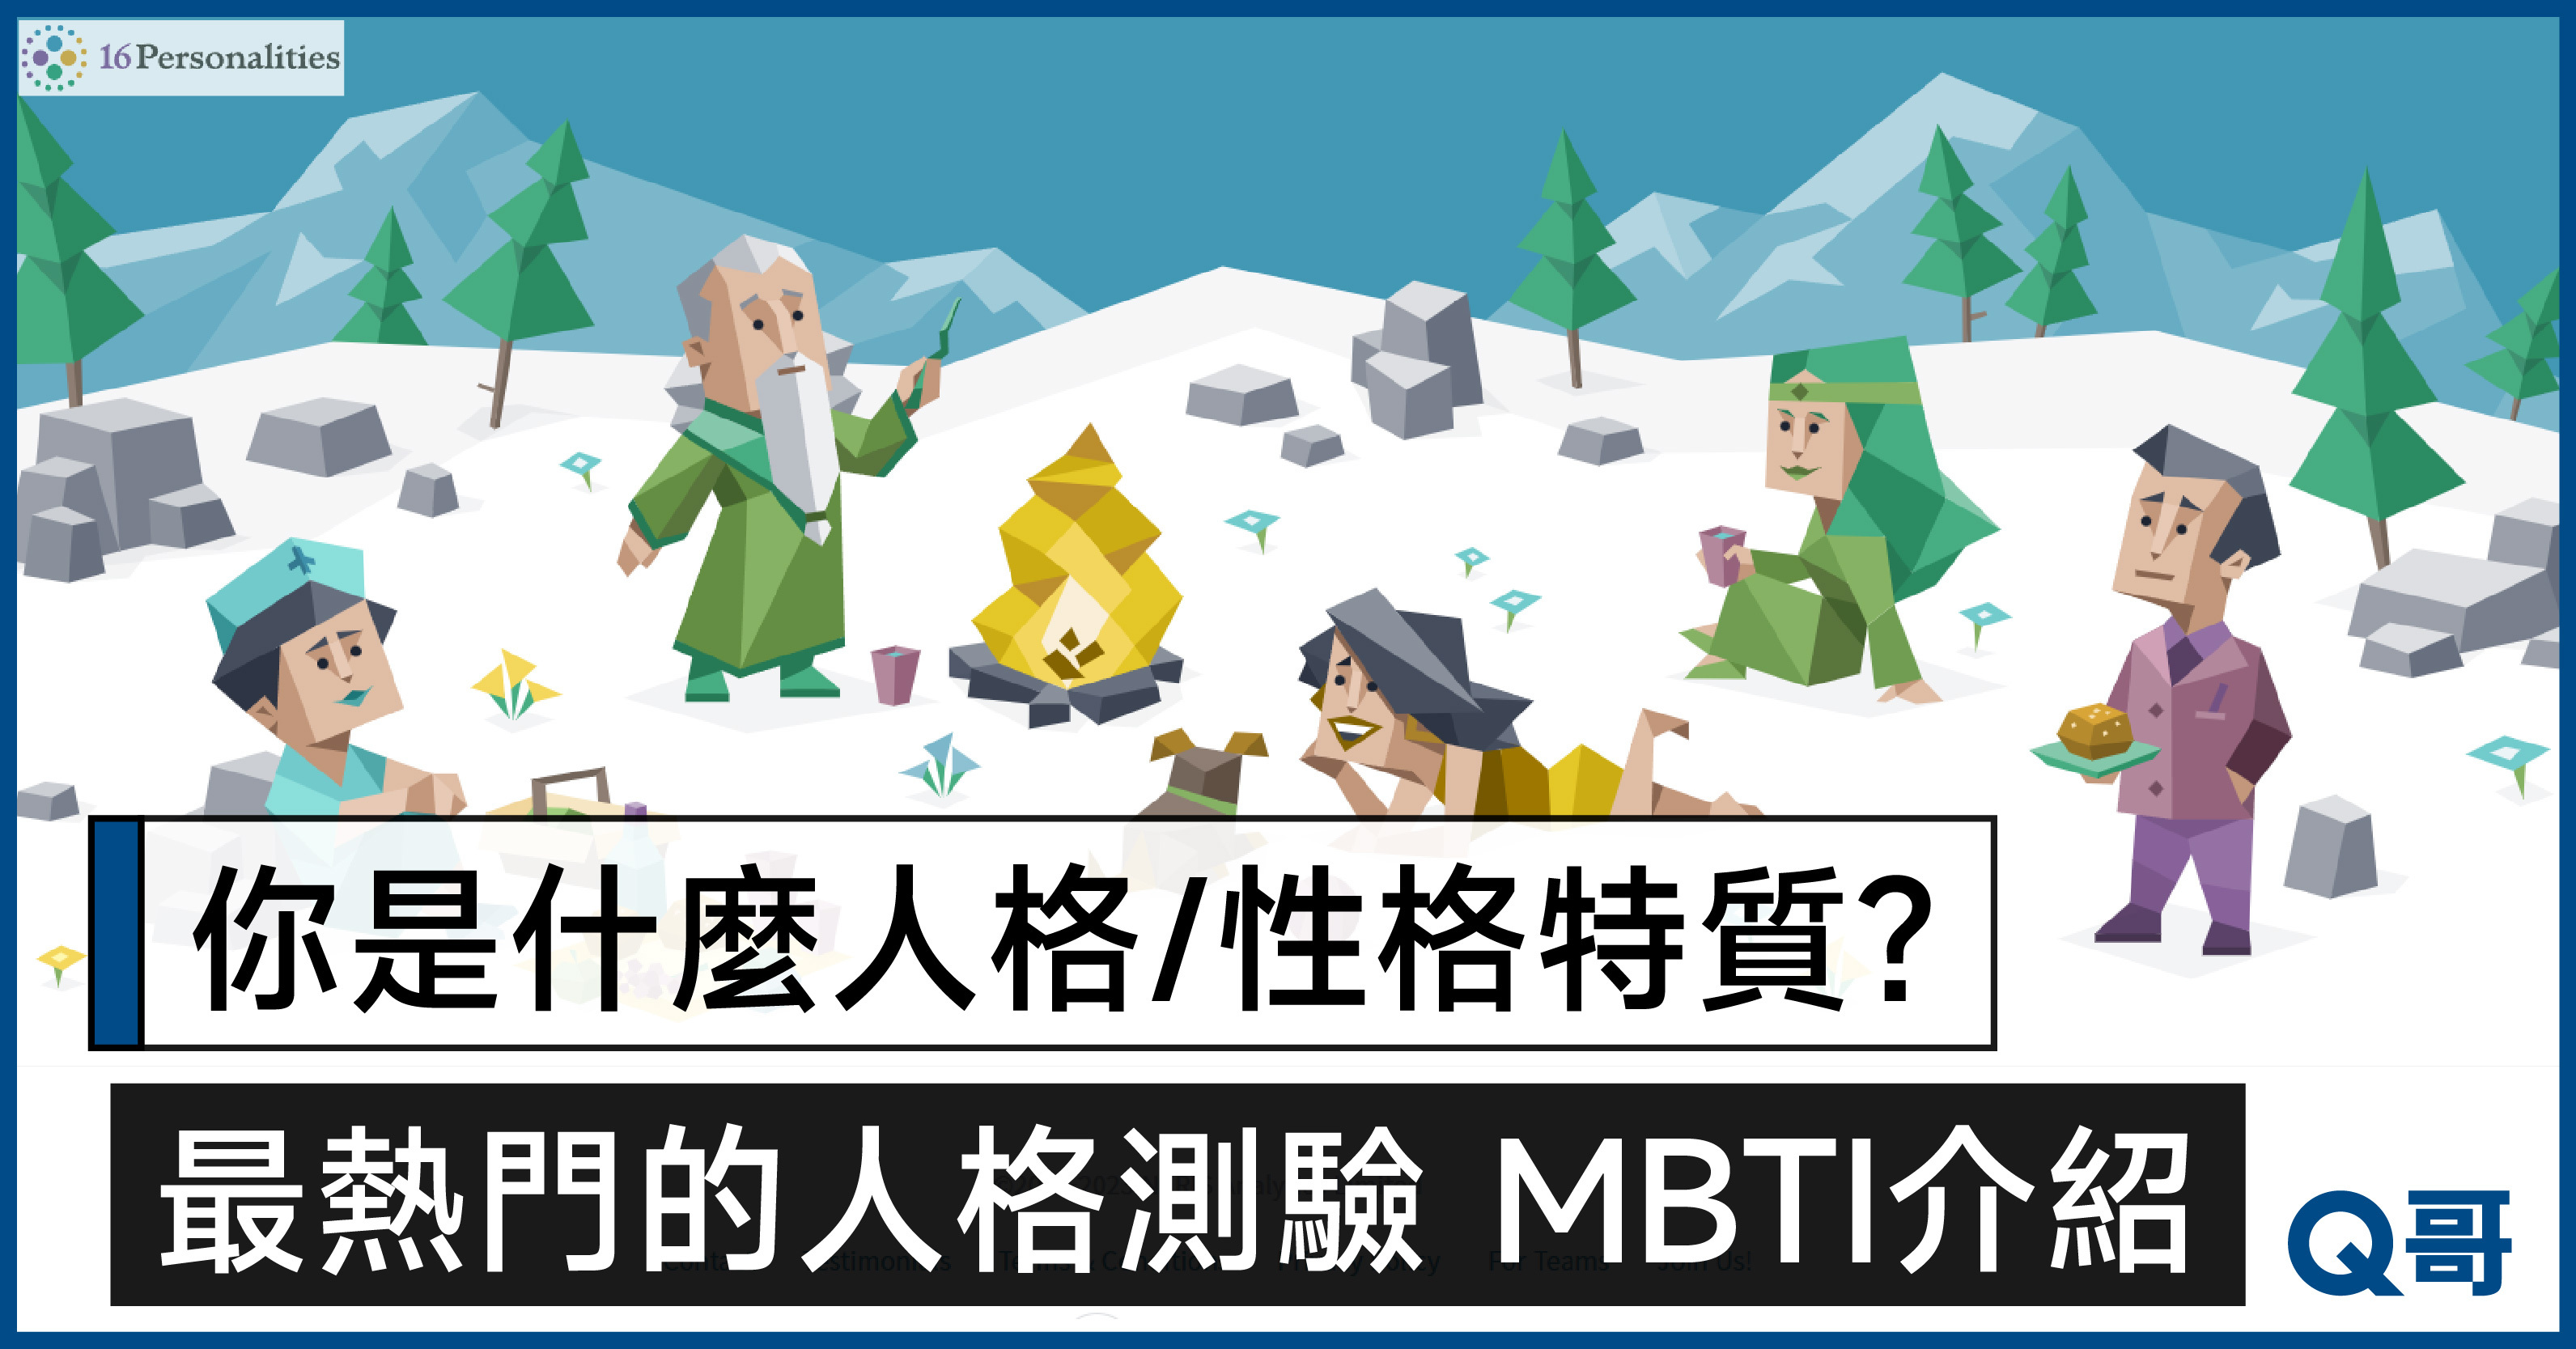 MBTI是什麼？ 16型人格免費性格測試介紹